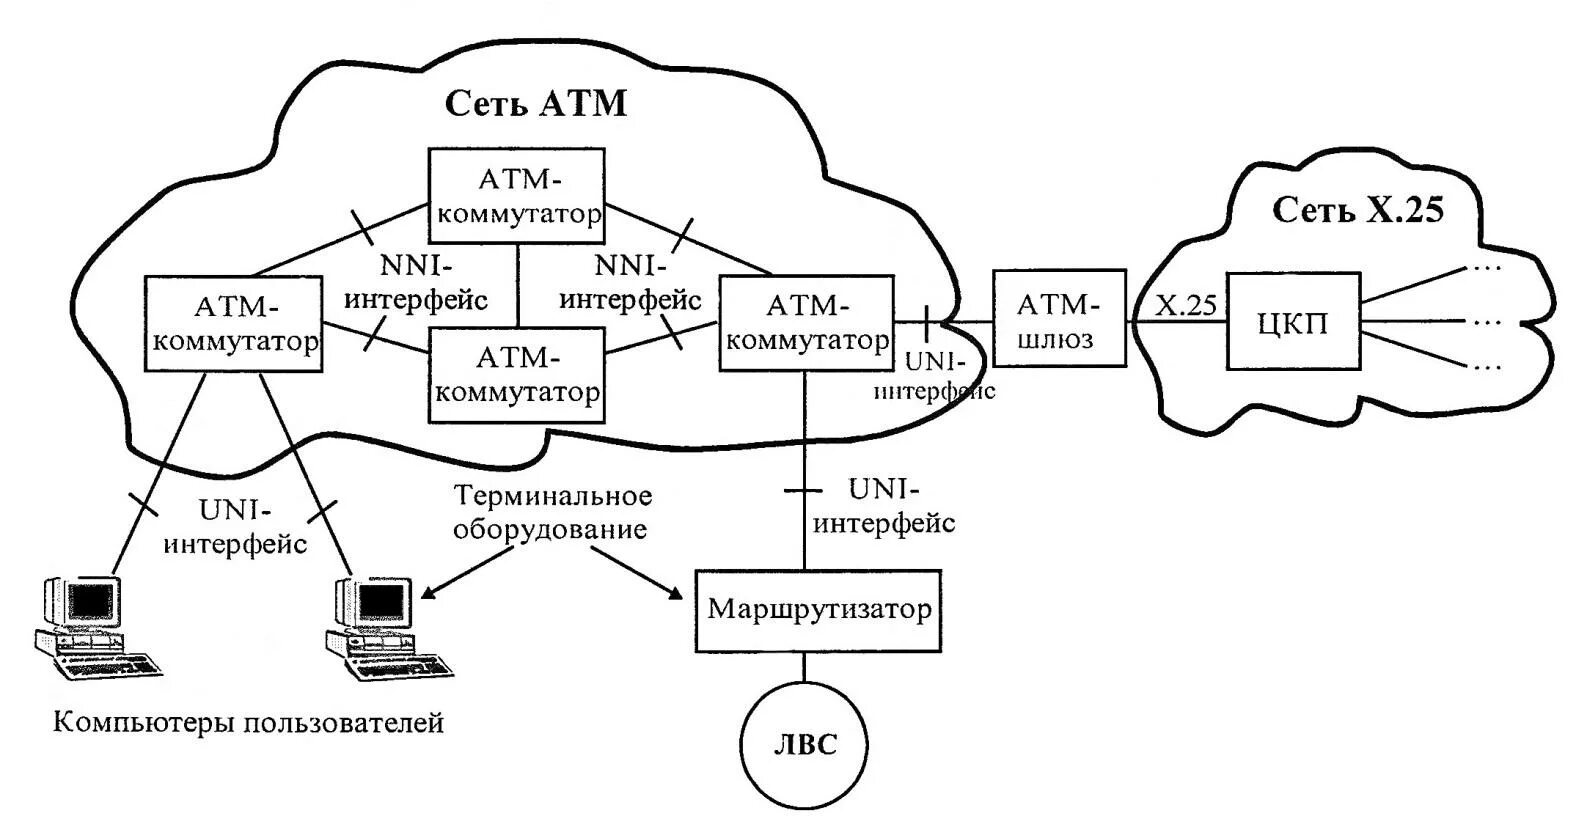 ATM технология передачи данных. Структура сети ATM. Стандарты технологии ATM. Схема мультиплексирования сети ATM.